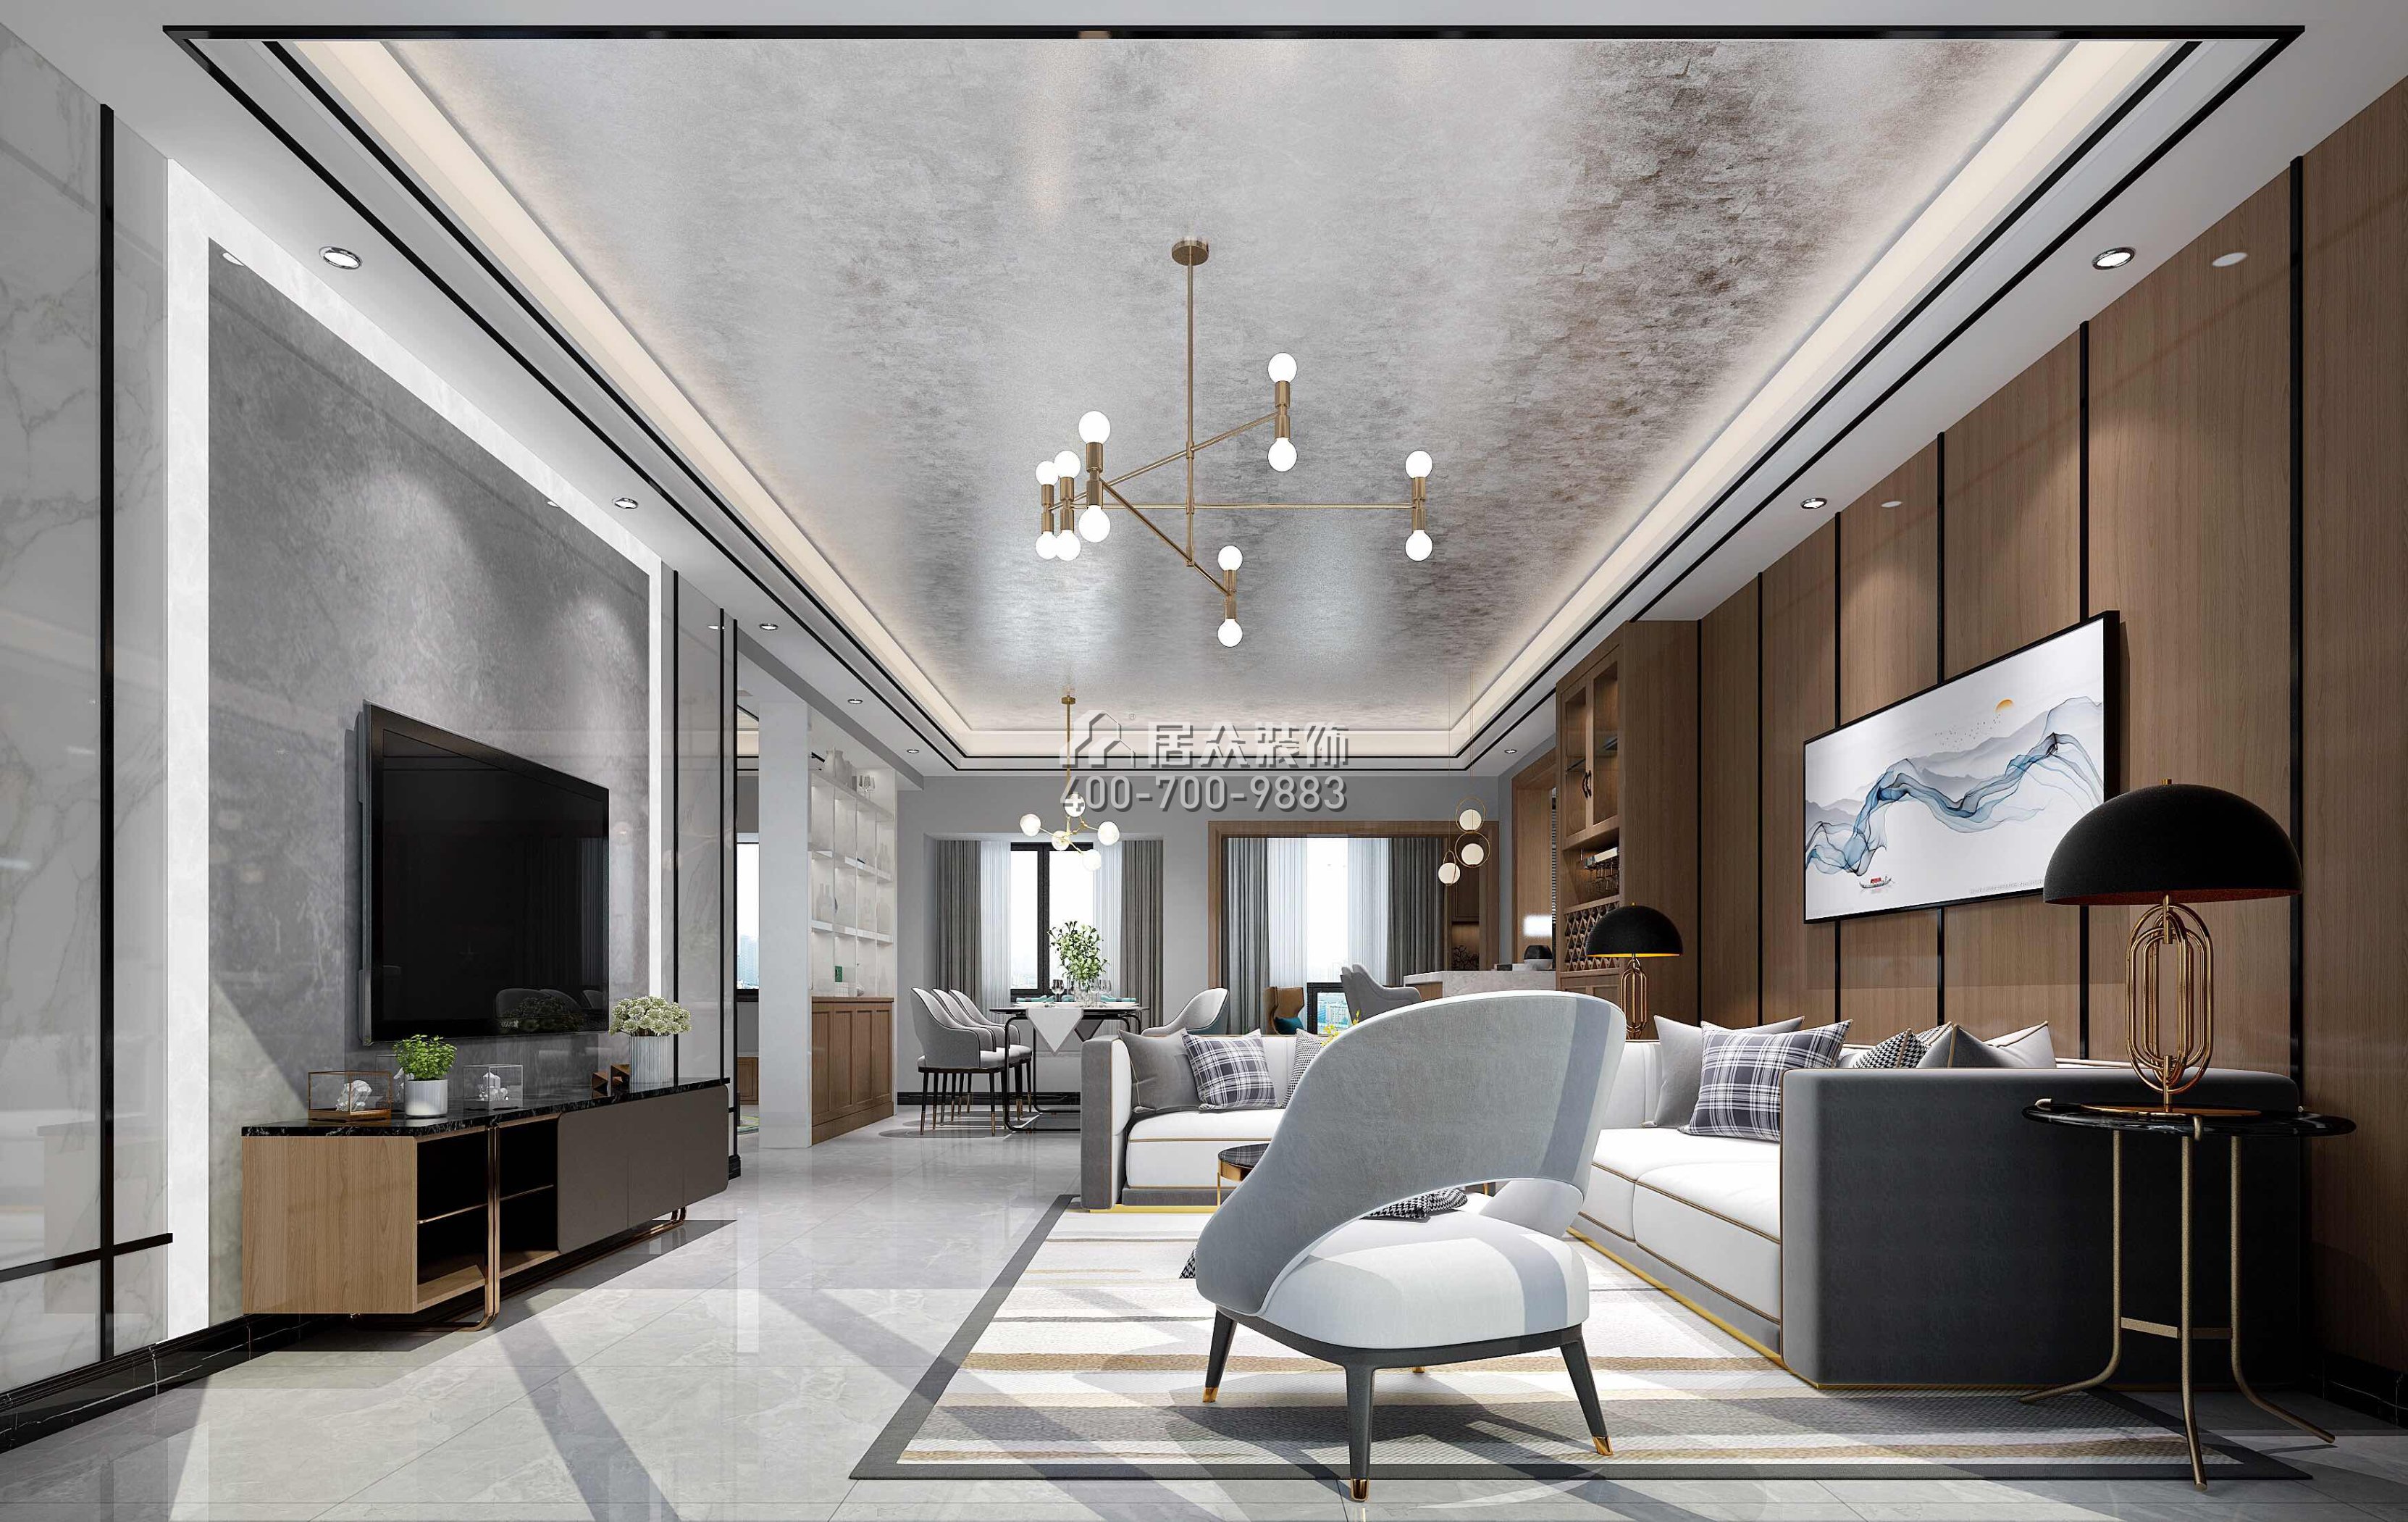 星河丹堤152平方米現代簡約風格平層戶型客廳裝修效果圖